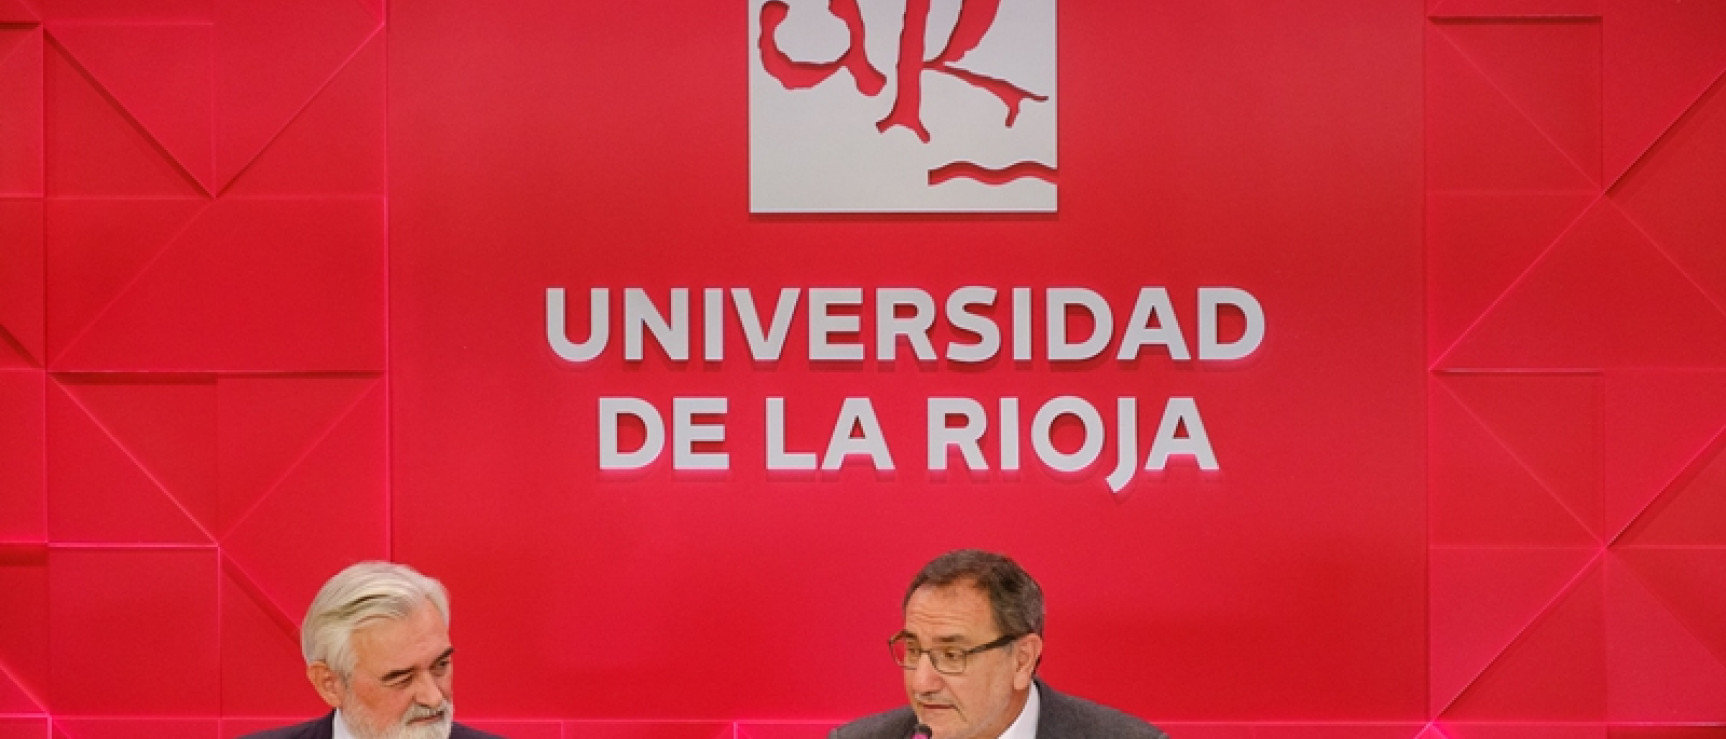 Darío Villanueva junto a Vicent Climent Jordà, rector de la Universitat Jaume I. Foto: Universidad de La Rioja.